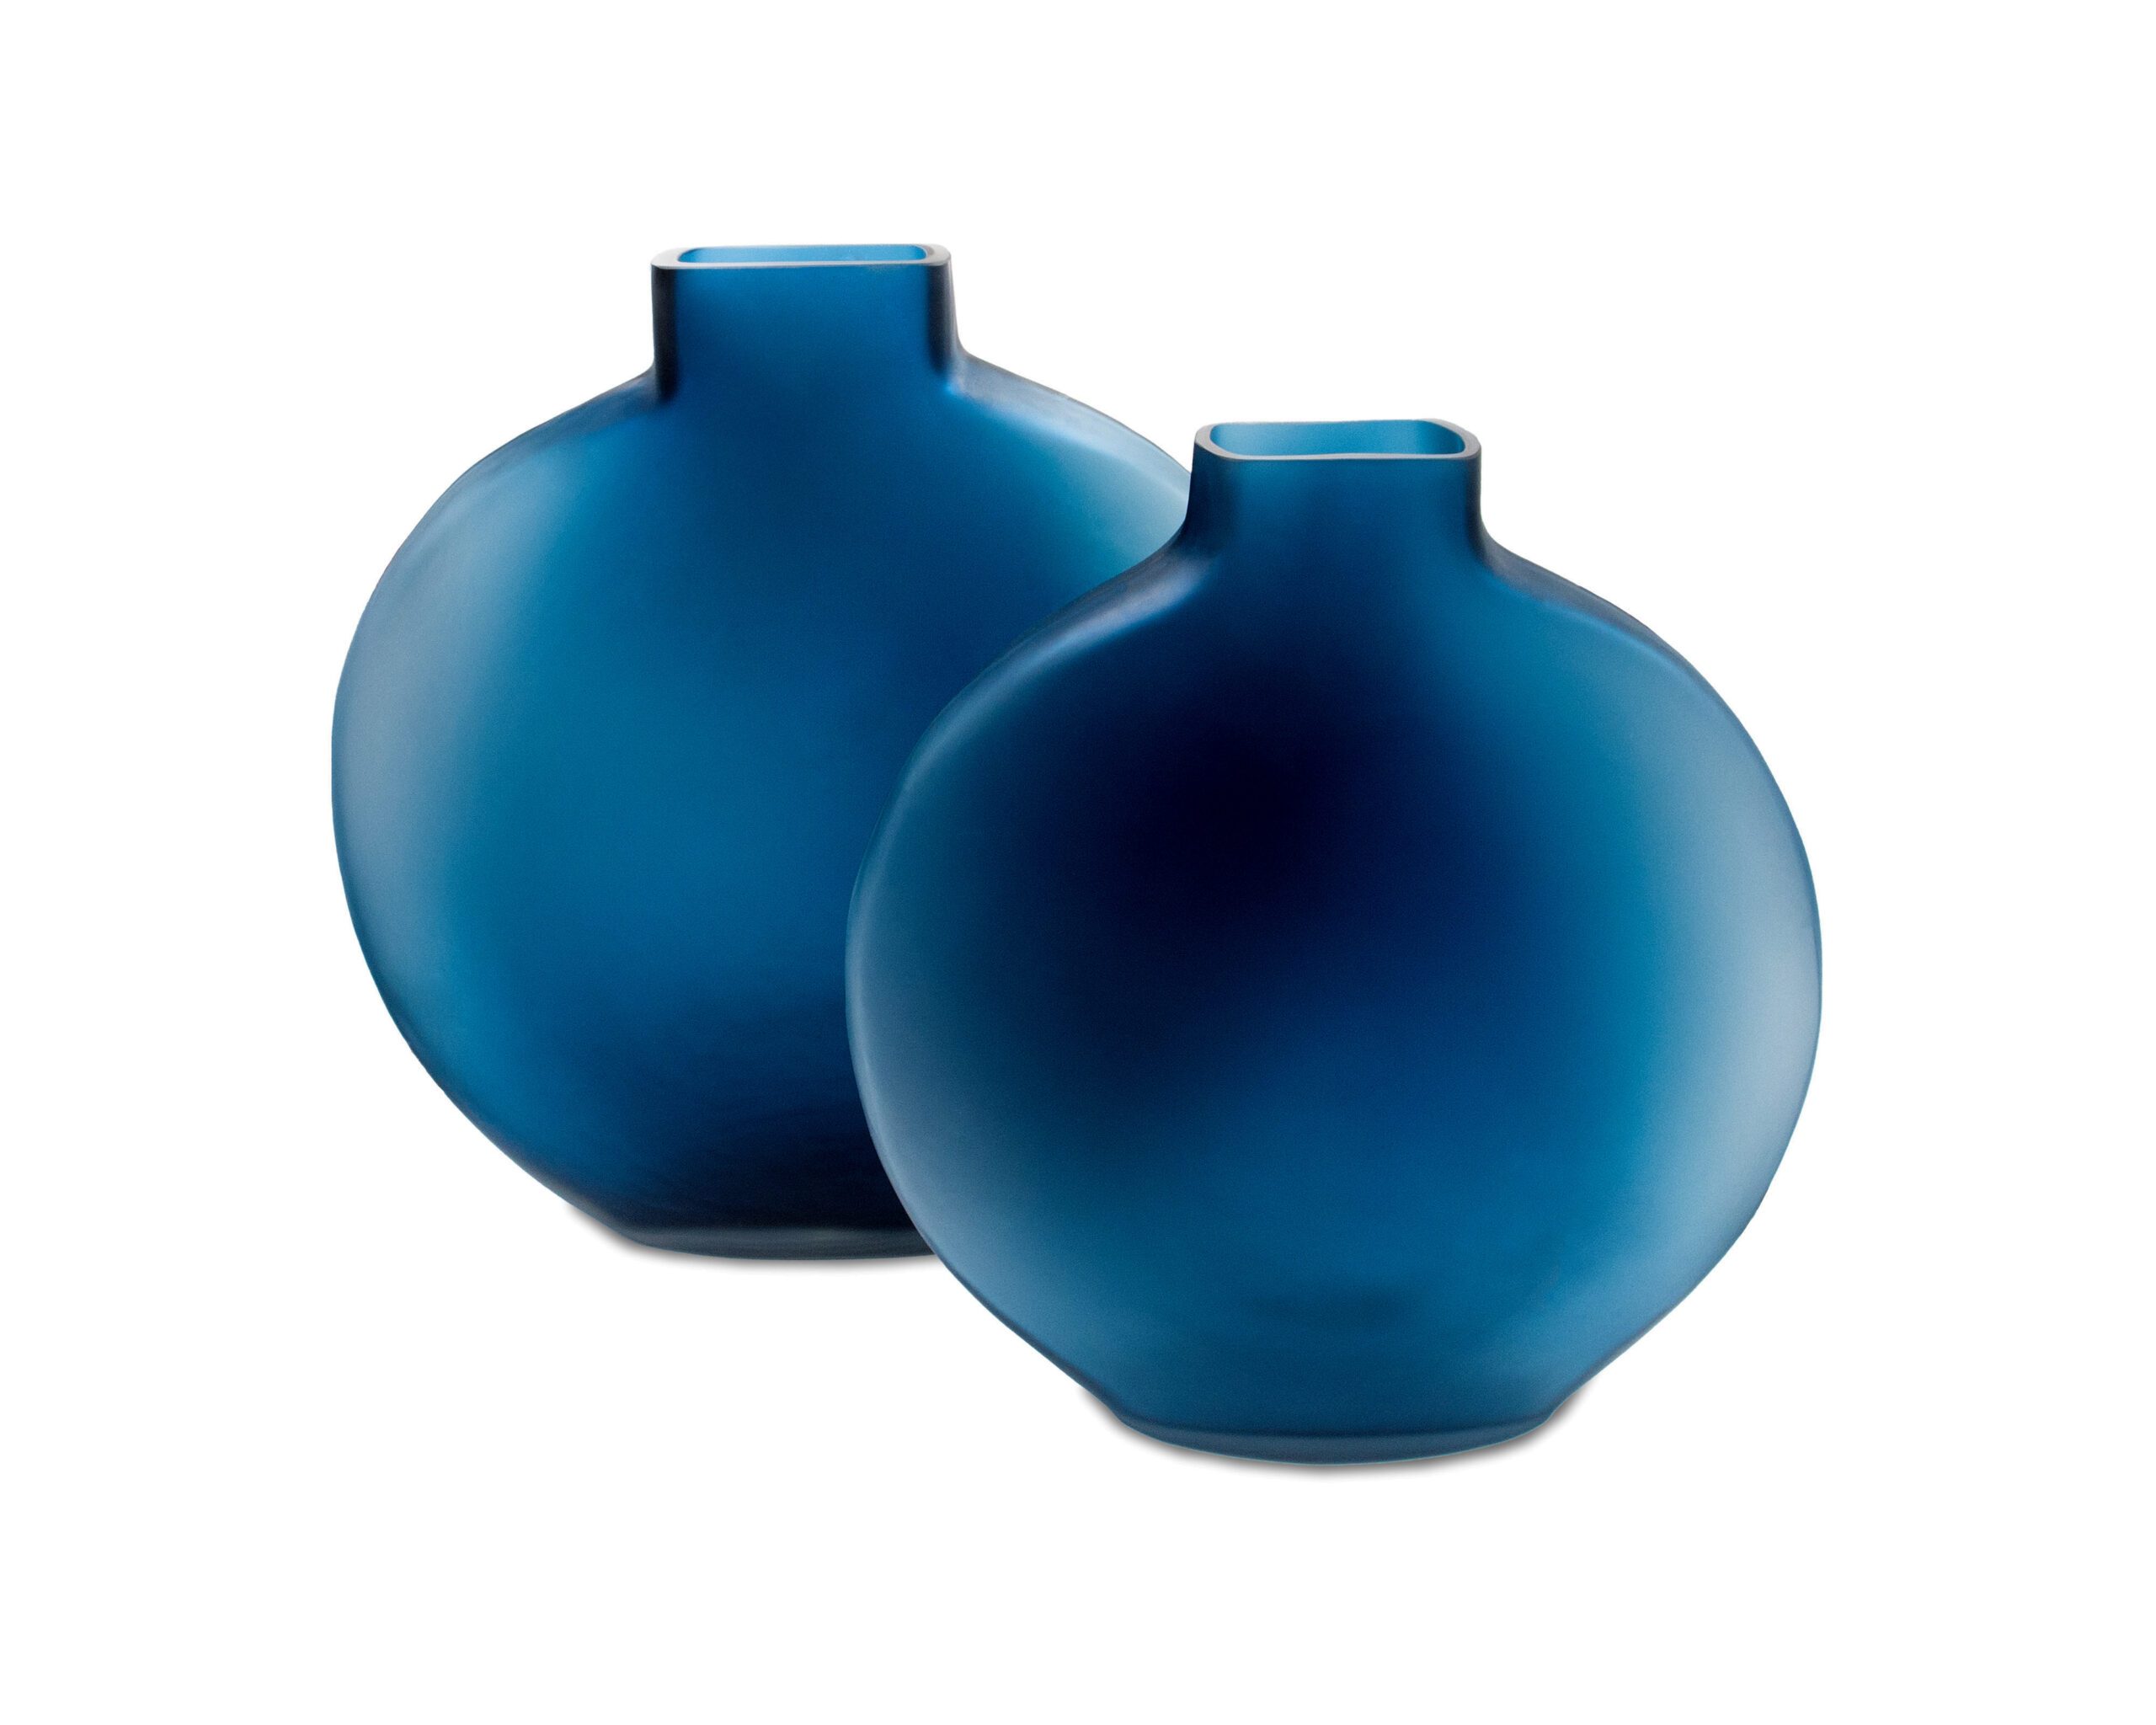 LE019-VS-059_LE019-VS-060_L&E__Ocean Blue Glass Vase_Small_Large_4000 x 3200_1